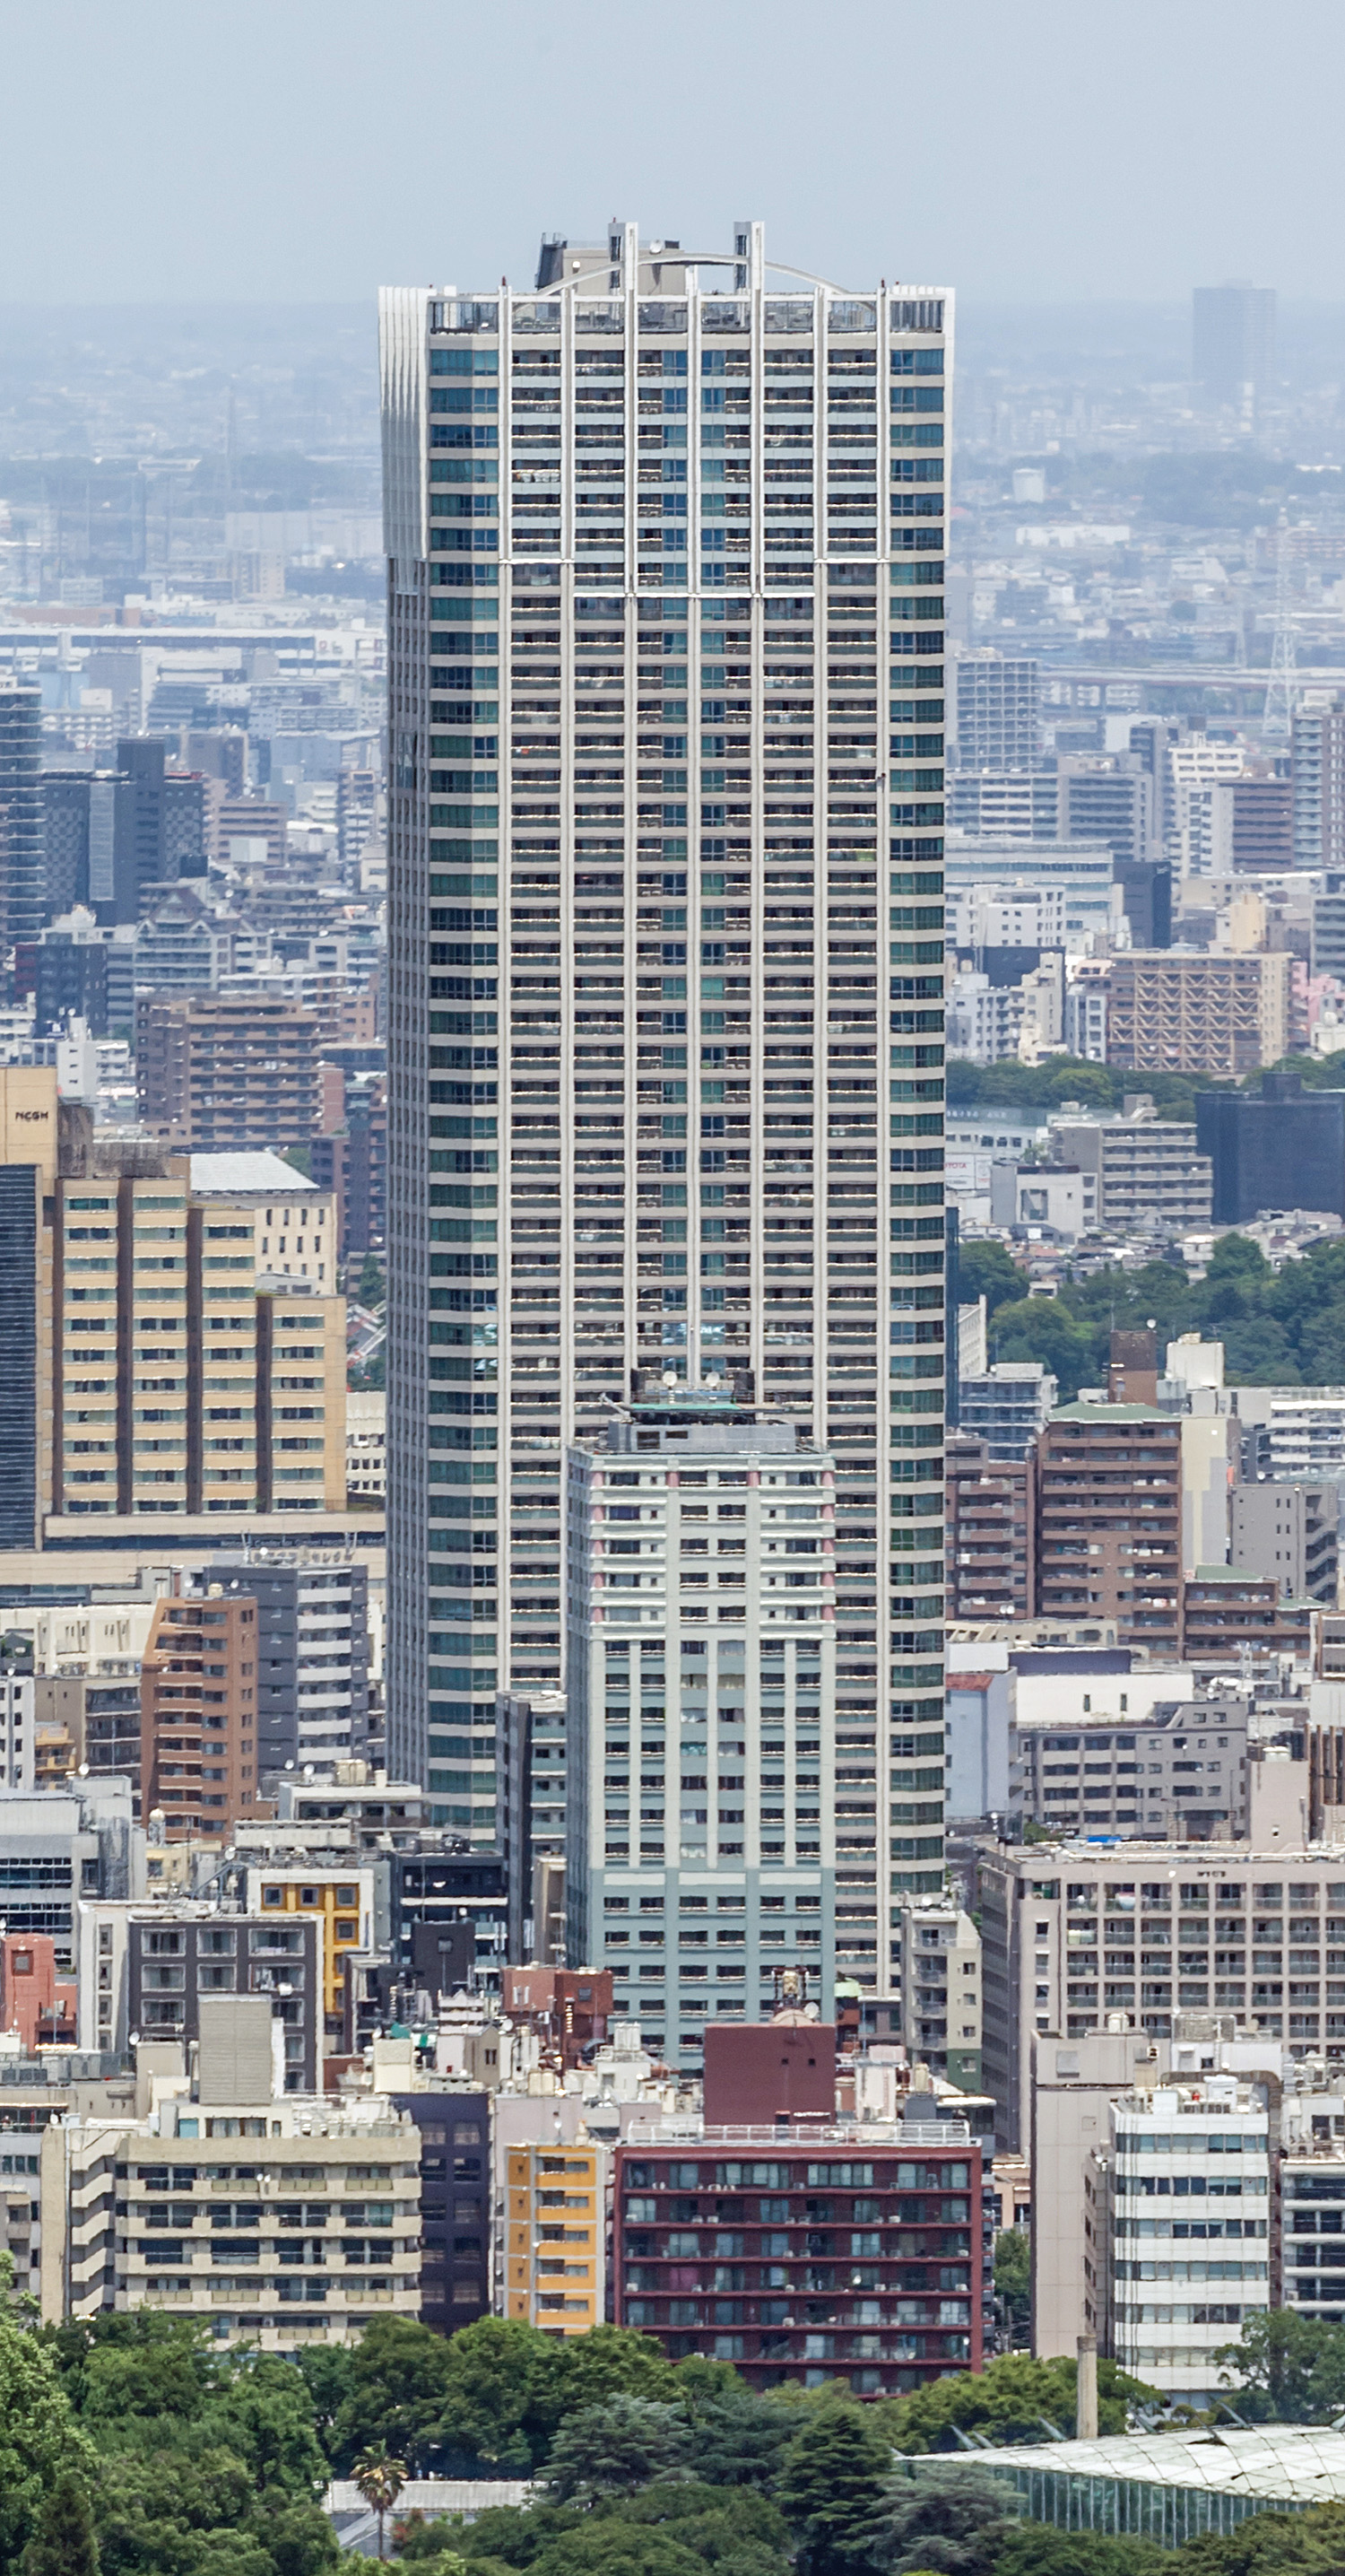 Tomihisa Cross Comfort Tower, Tokyo - View from Shibuya Scramble Square. © Mathias Beinling